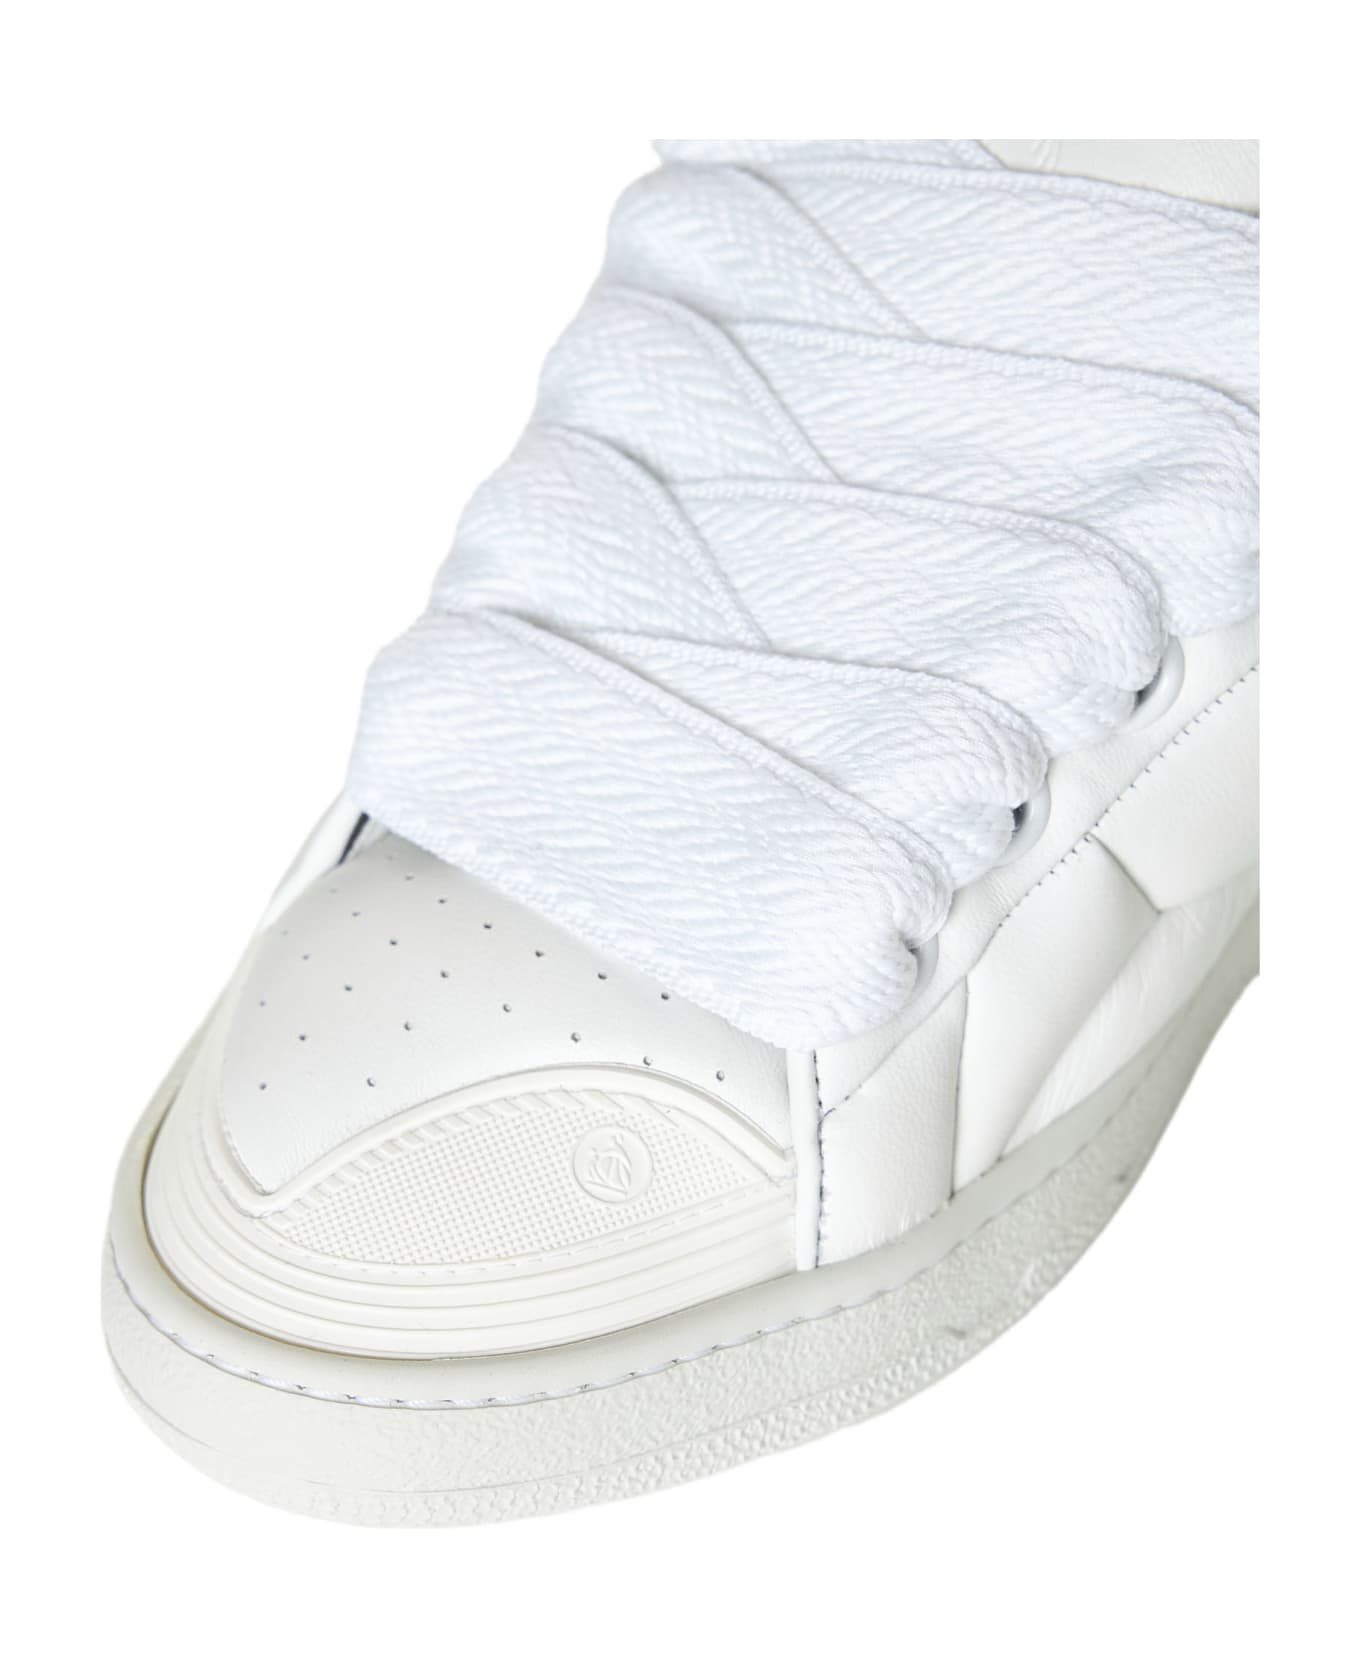 Lanvin Sneakers - White/white スニーカー